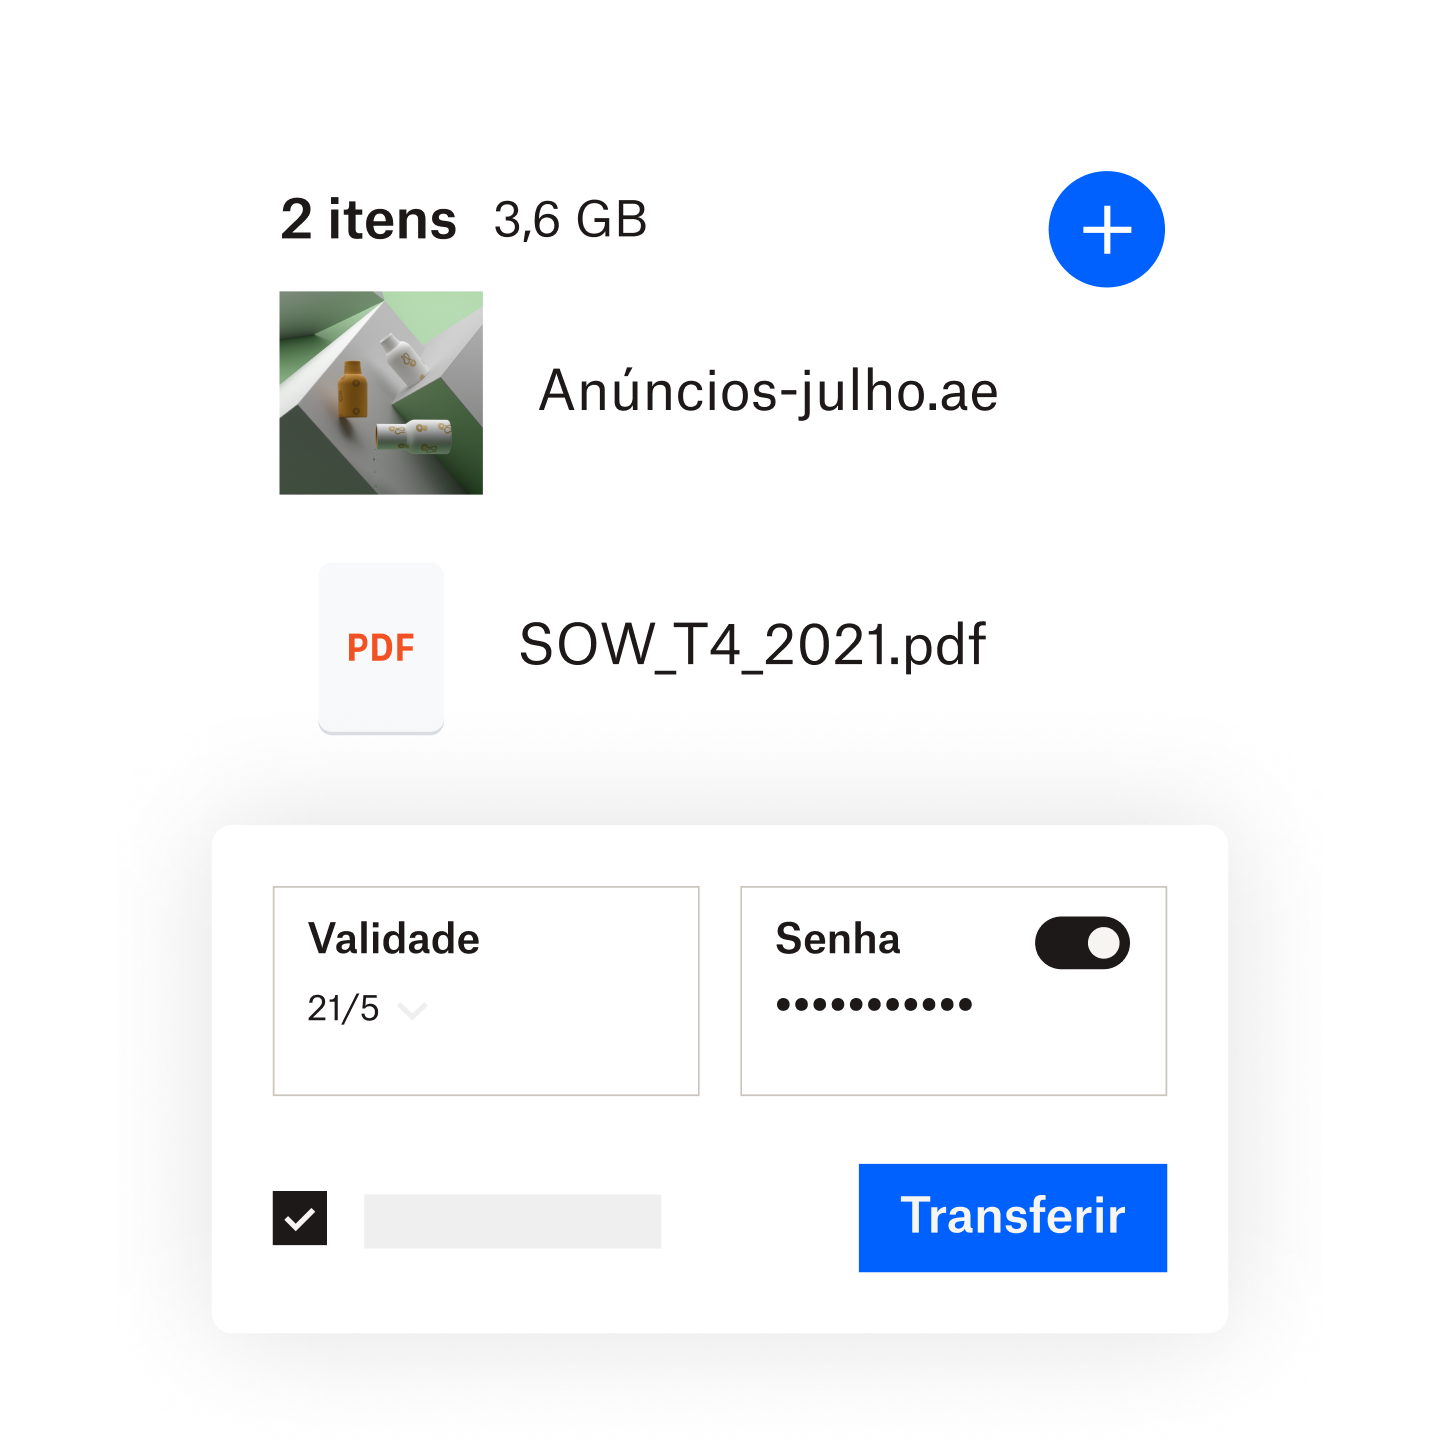 Um usuário adicionando uma senha e um prazo de validade a um arquivo compartilhado via Dropbox Transfer